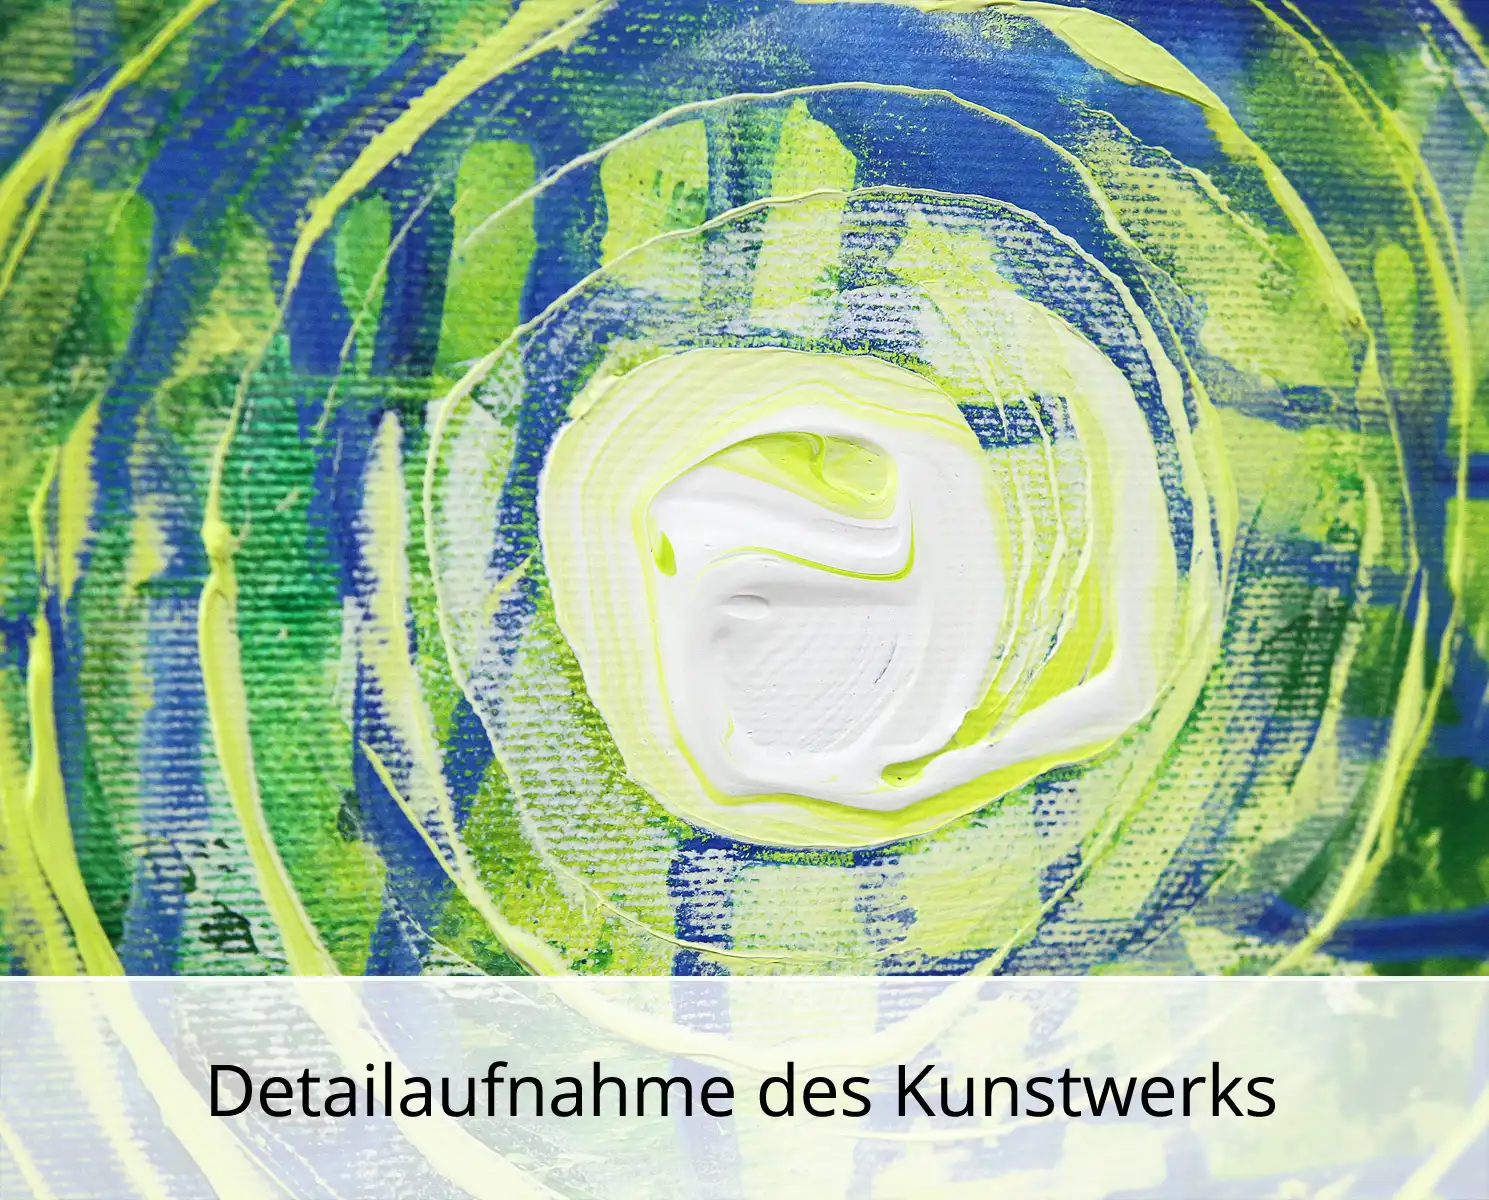 Abstraktes Originalgemälde: "Lebenskanäle IV", R. König, Unikat